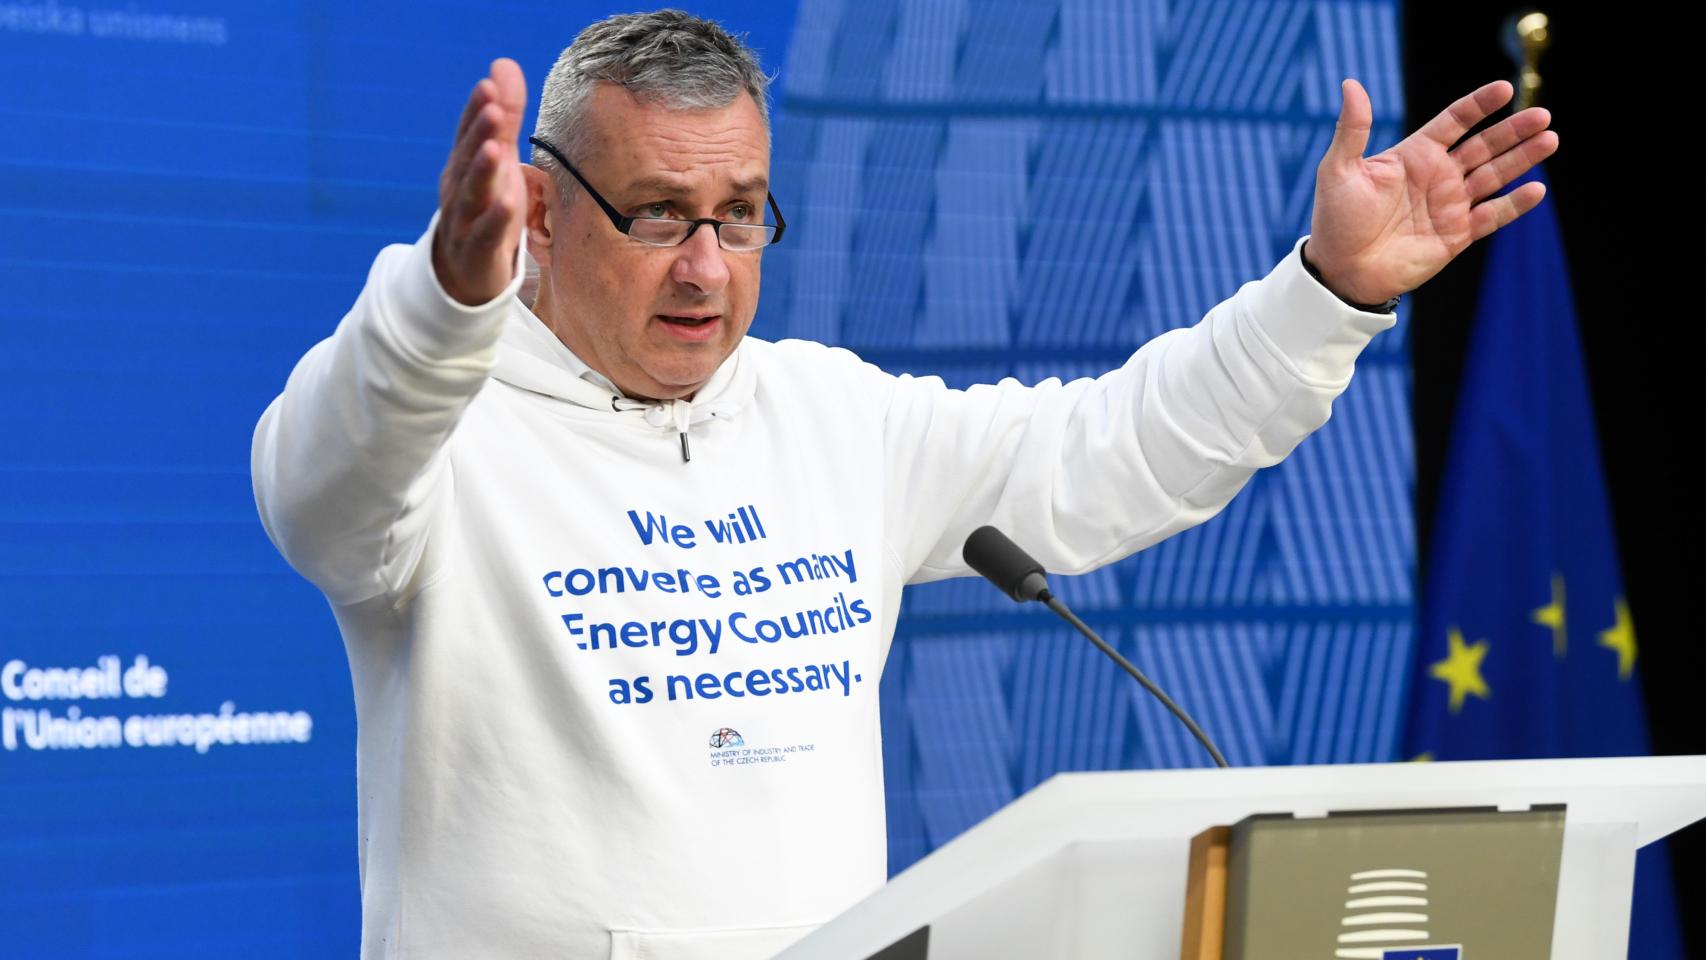 El ministro checho de Energía, Jozef Síkela, con su sudadera de 'Convocaremos todos los Consejos de Energía que sean necesarios'